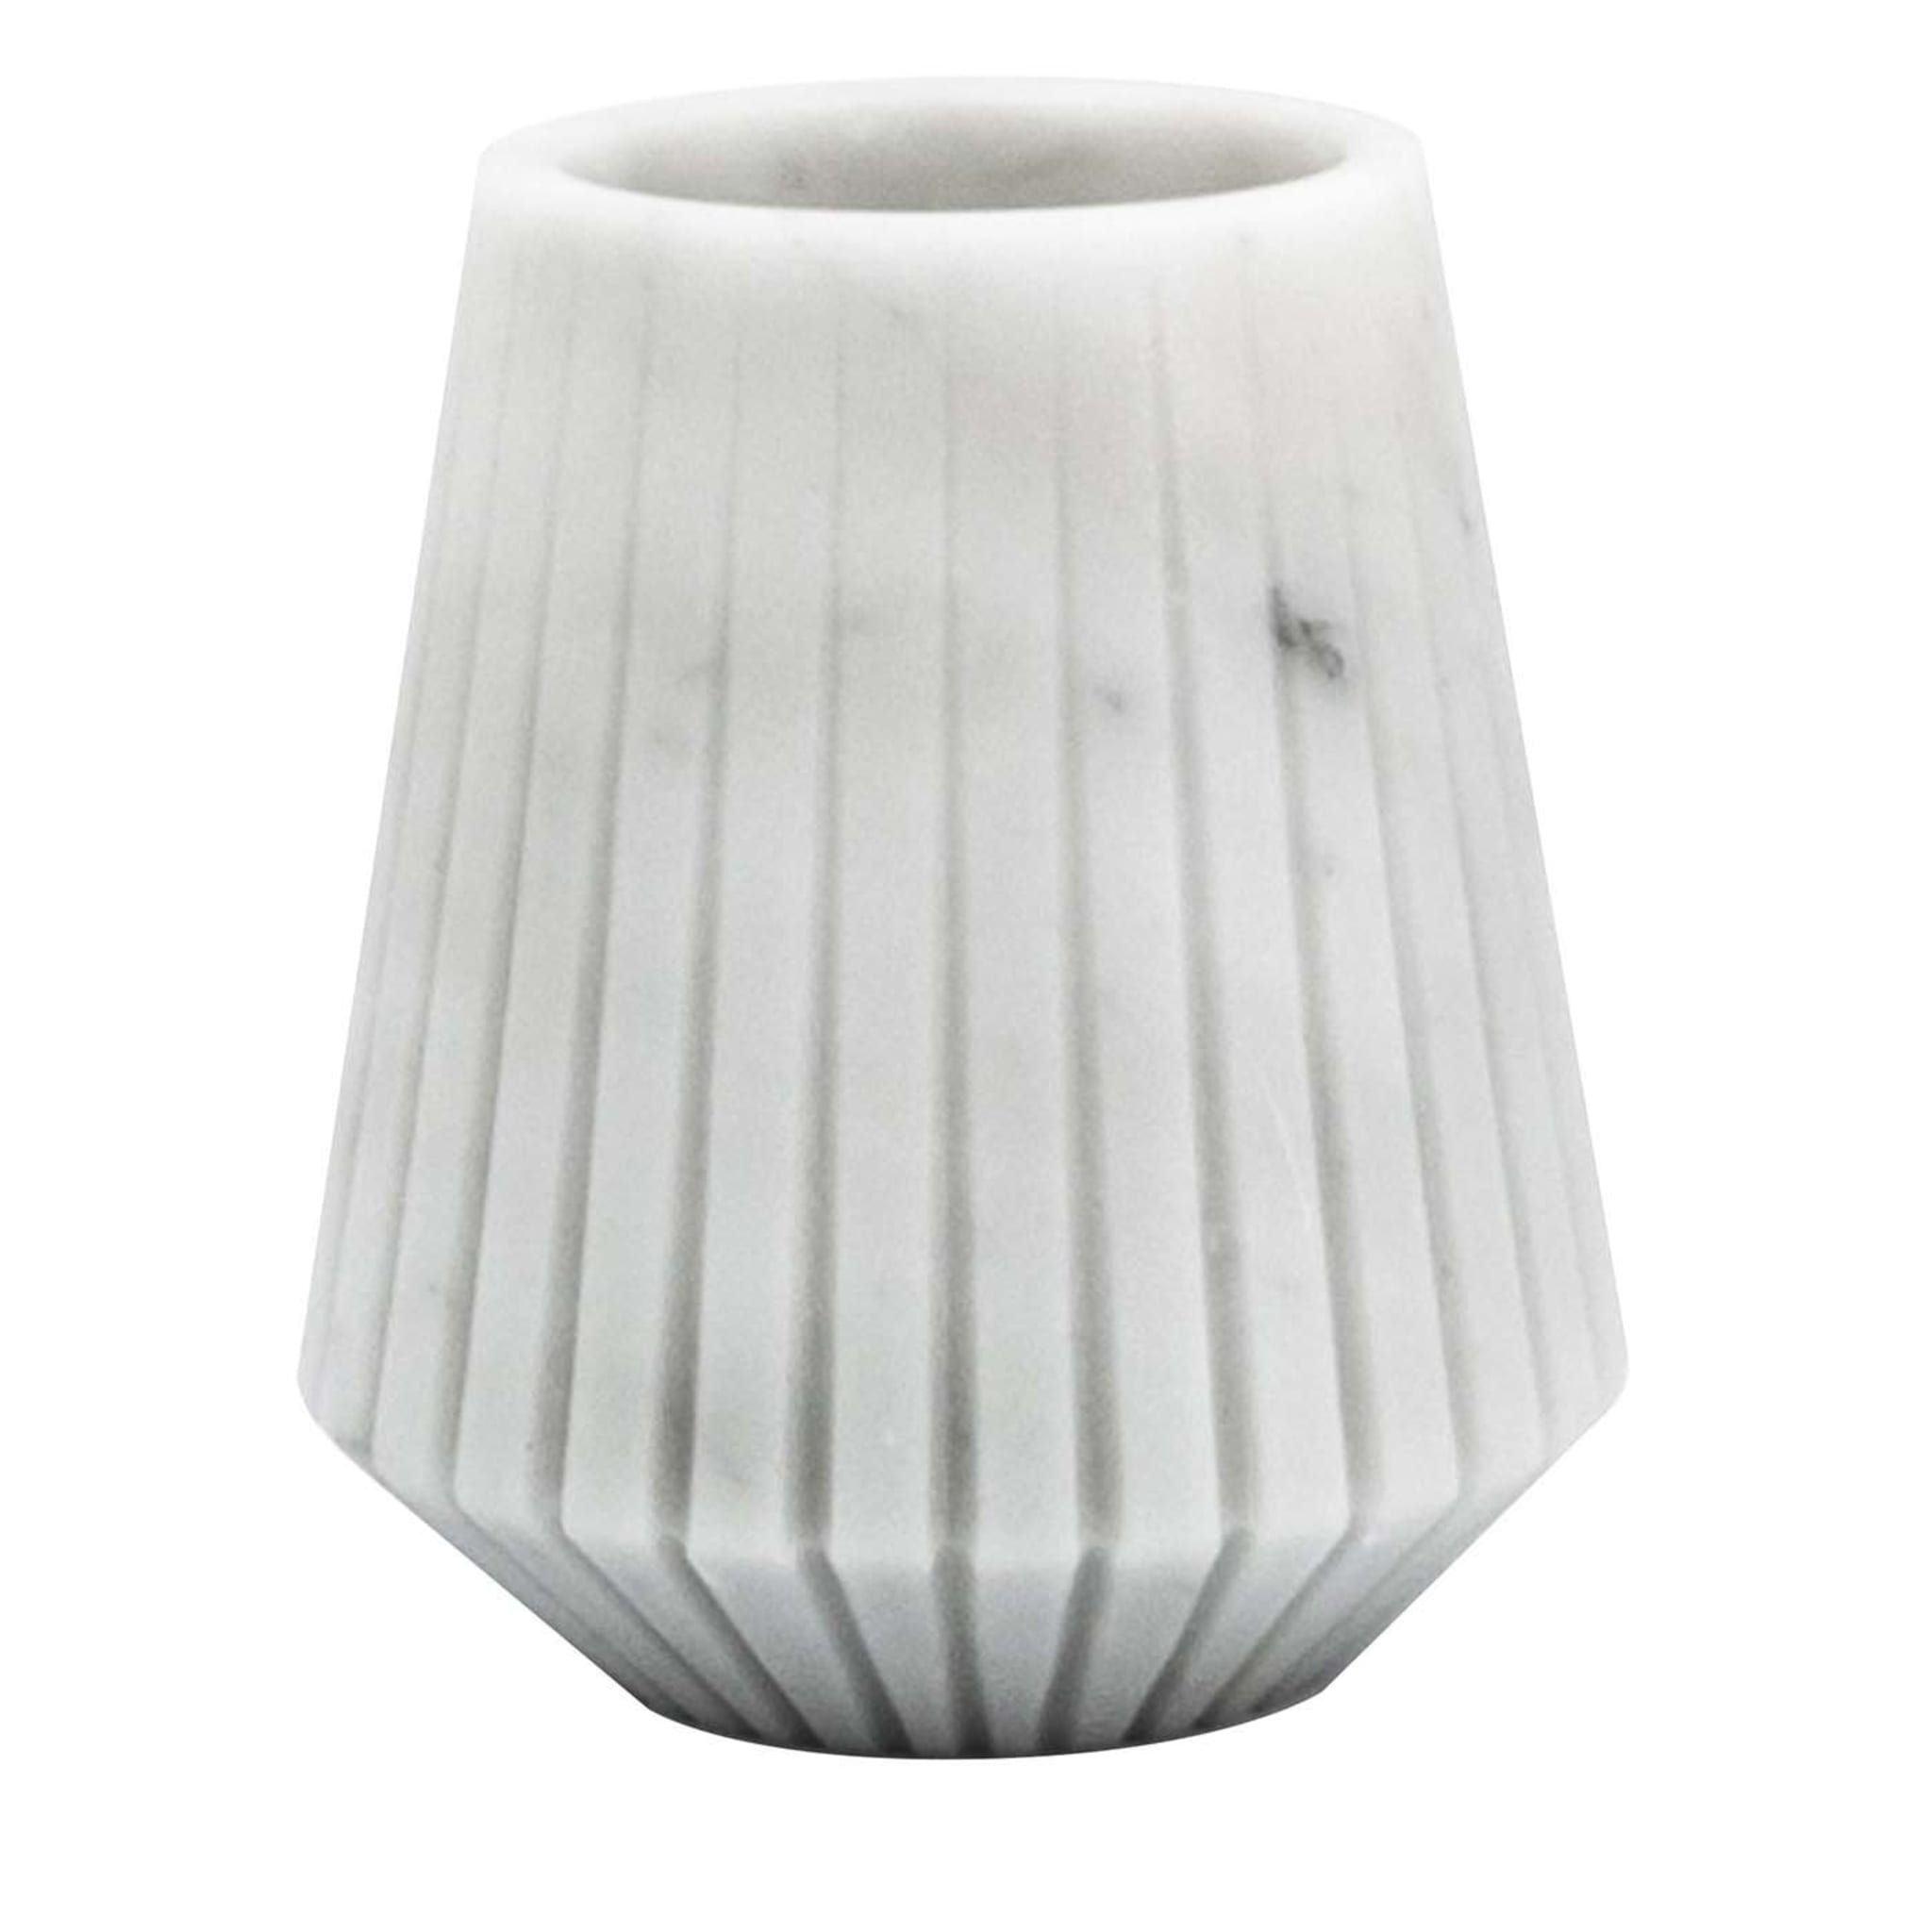 White Carrara Marble Low Vase by Jacopo Simonetti - Main view